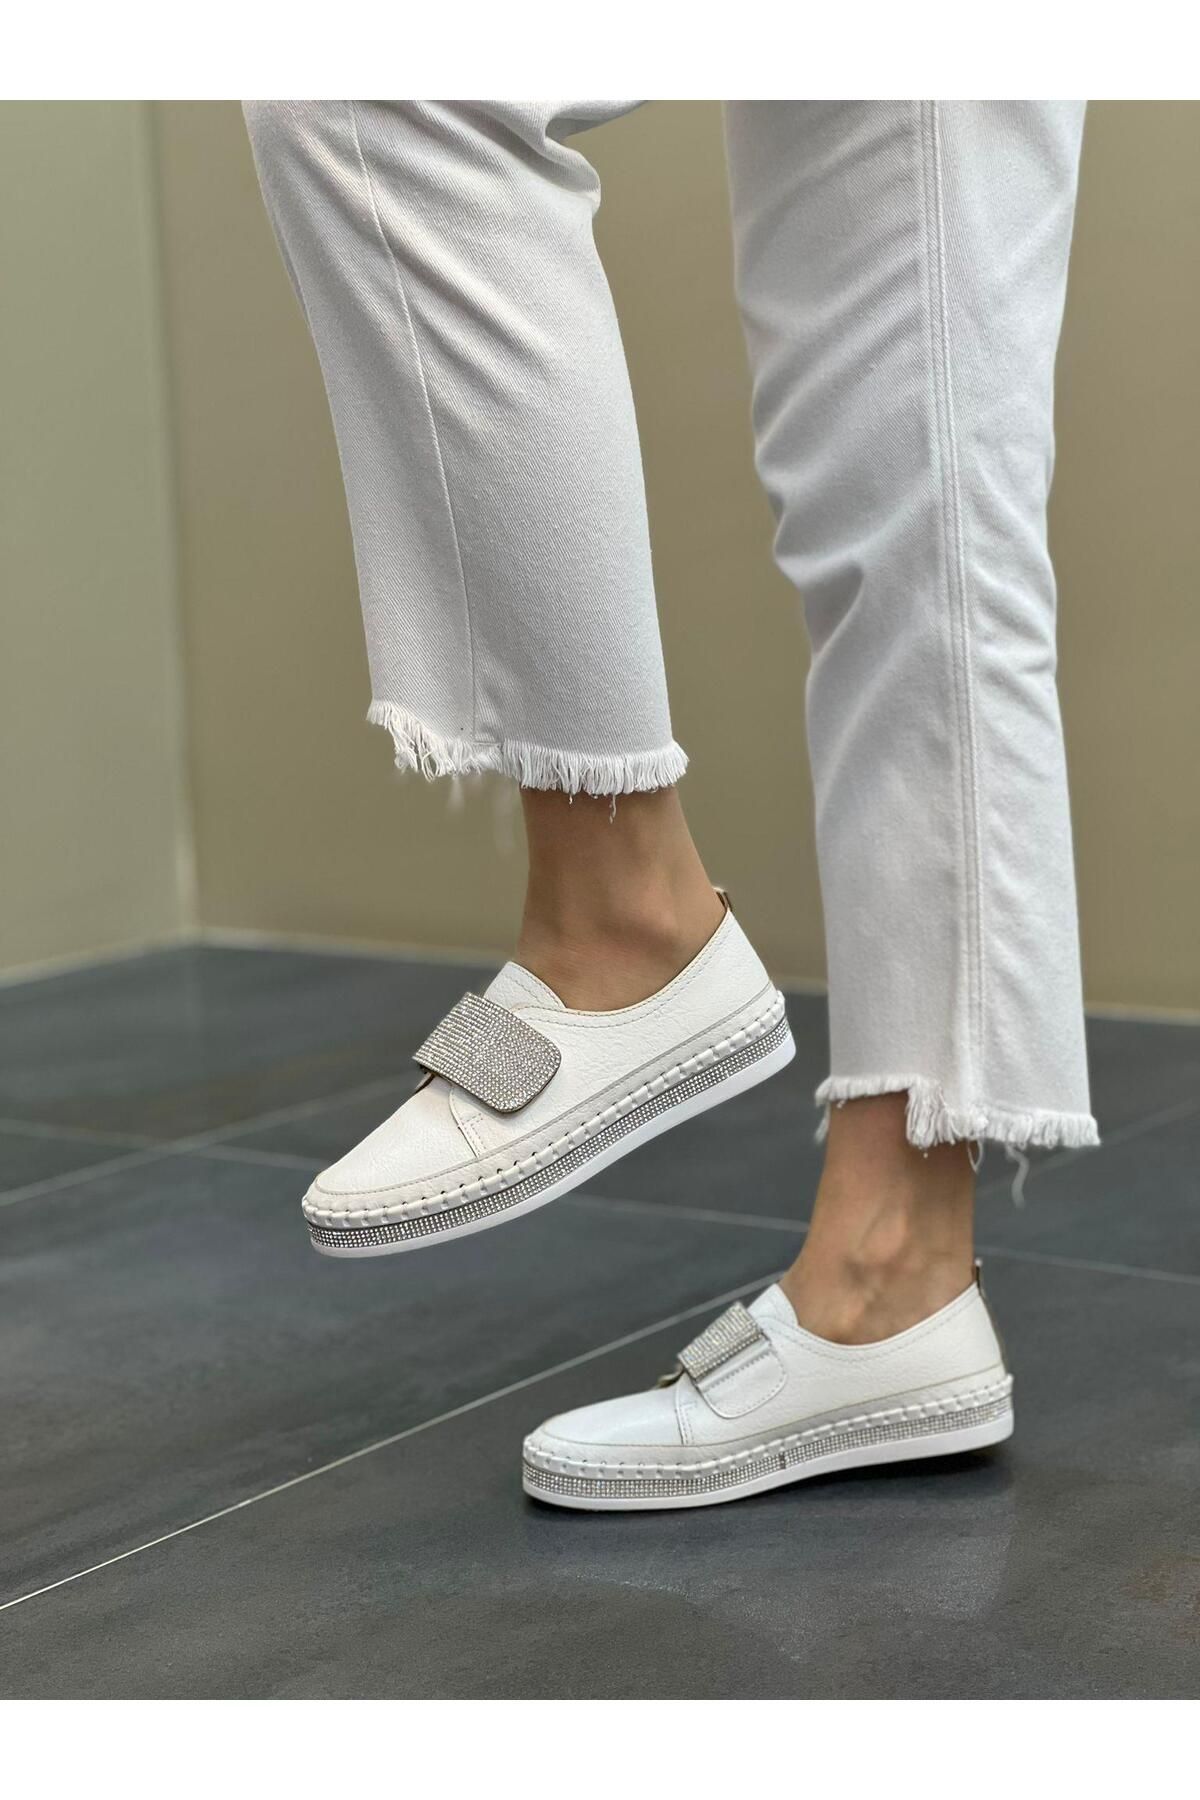 DİVA Miya Beyaz Cırtlı Taşlı Günlük Kadın Ayakkabı